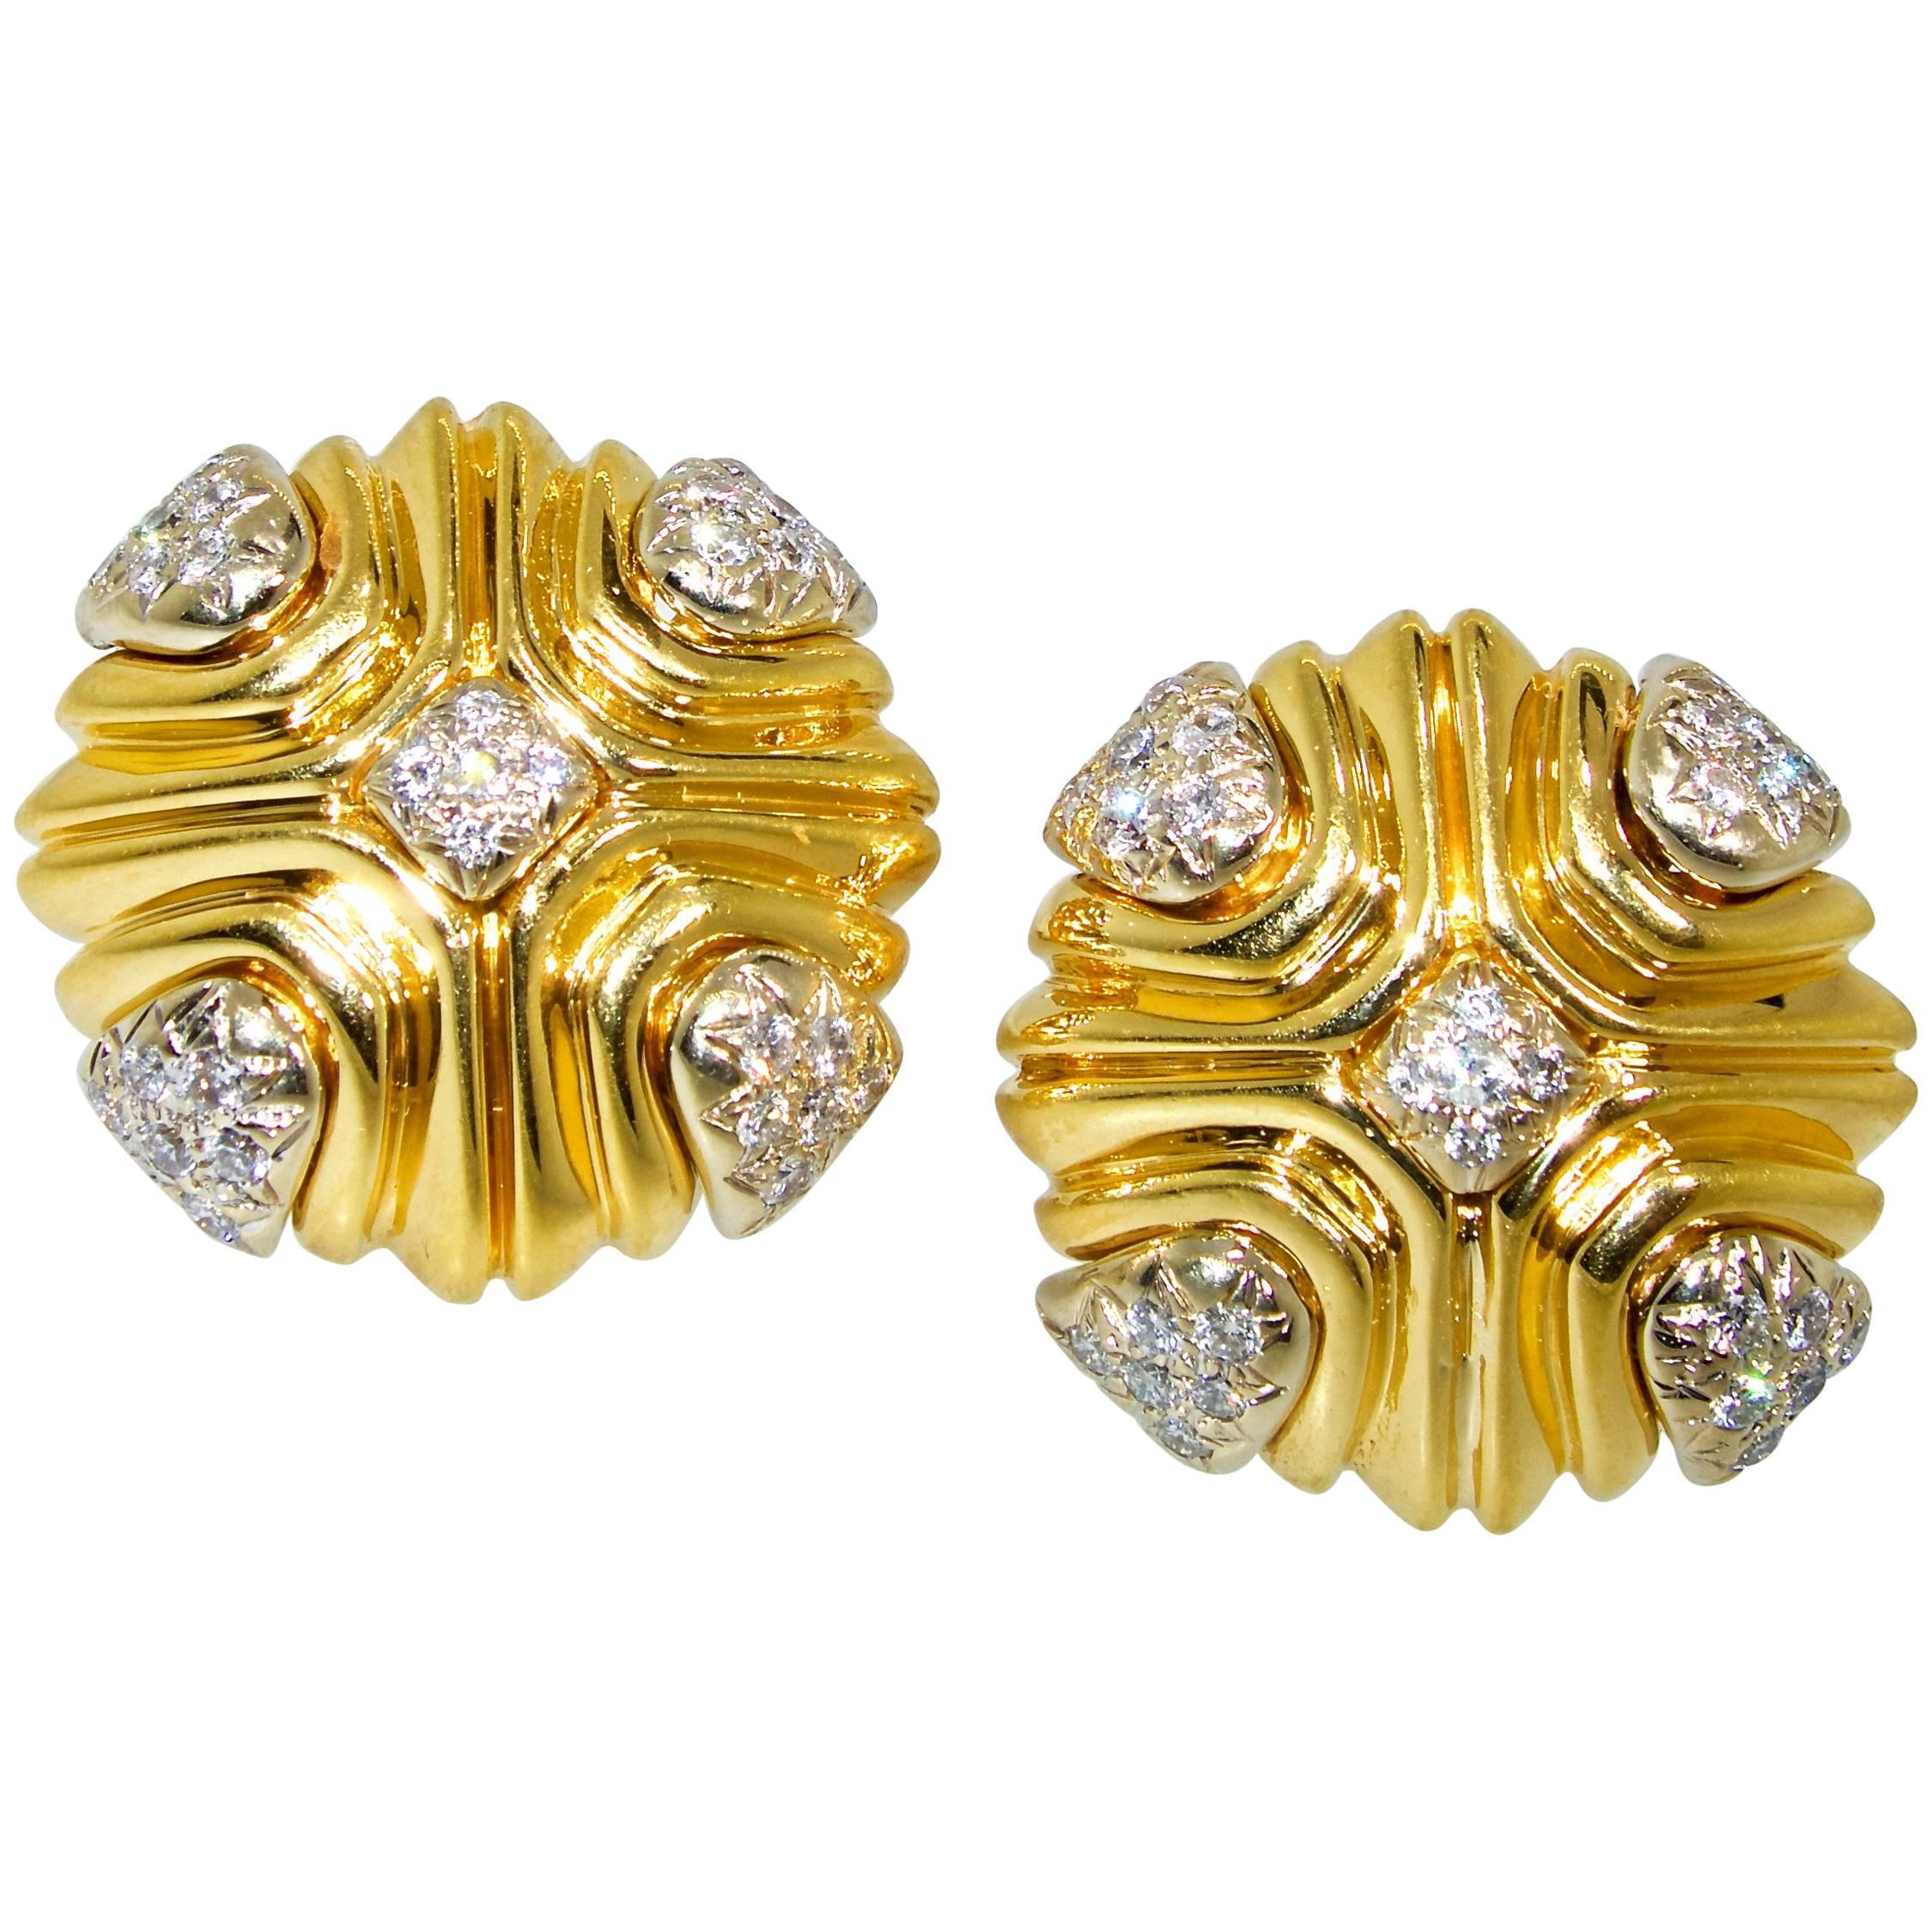 18 Karat and Fine Diamond Large Earrings